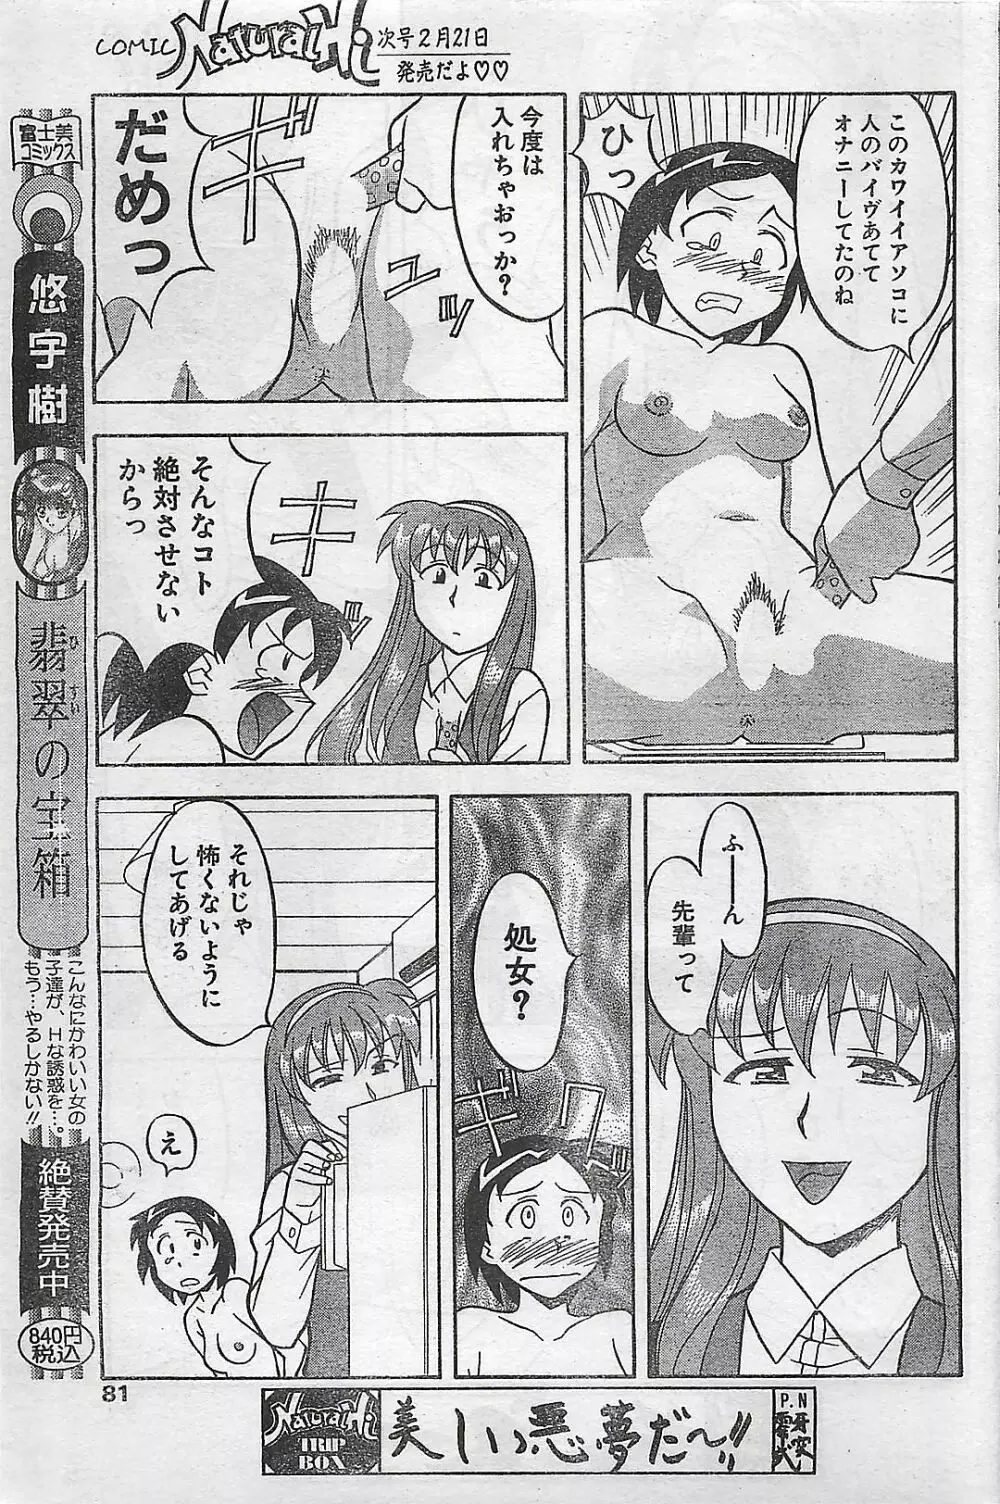 COMIC ナチュラル・ハイ Vol.31 1998年03月号 81ページ